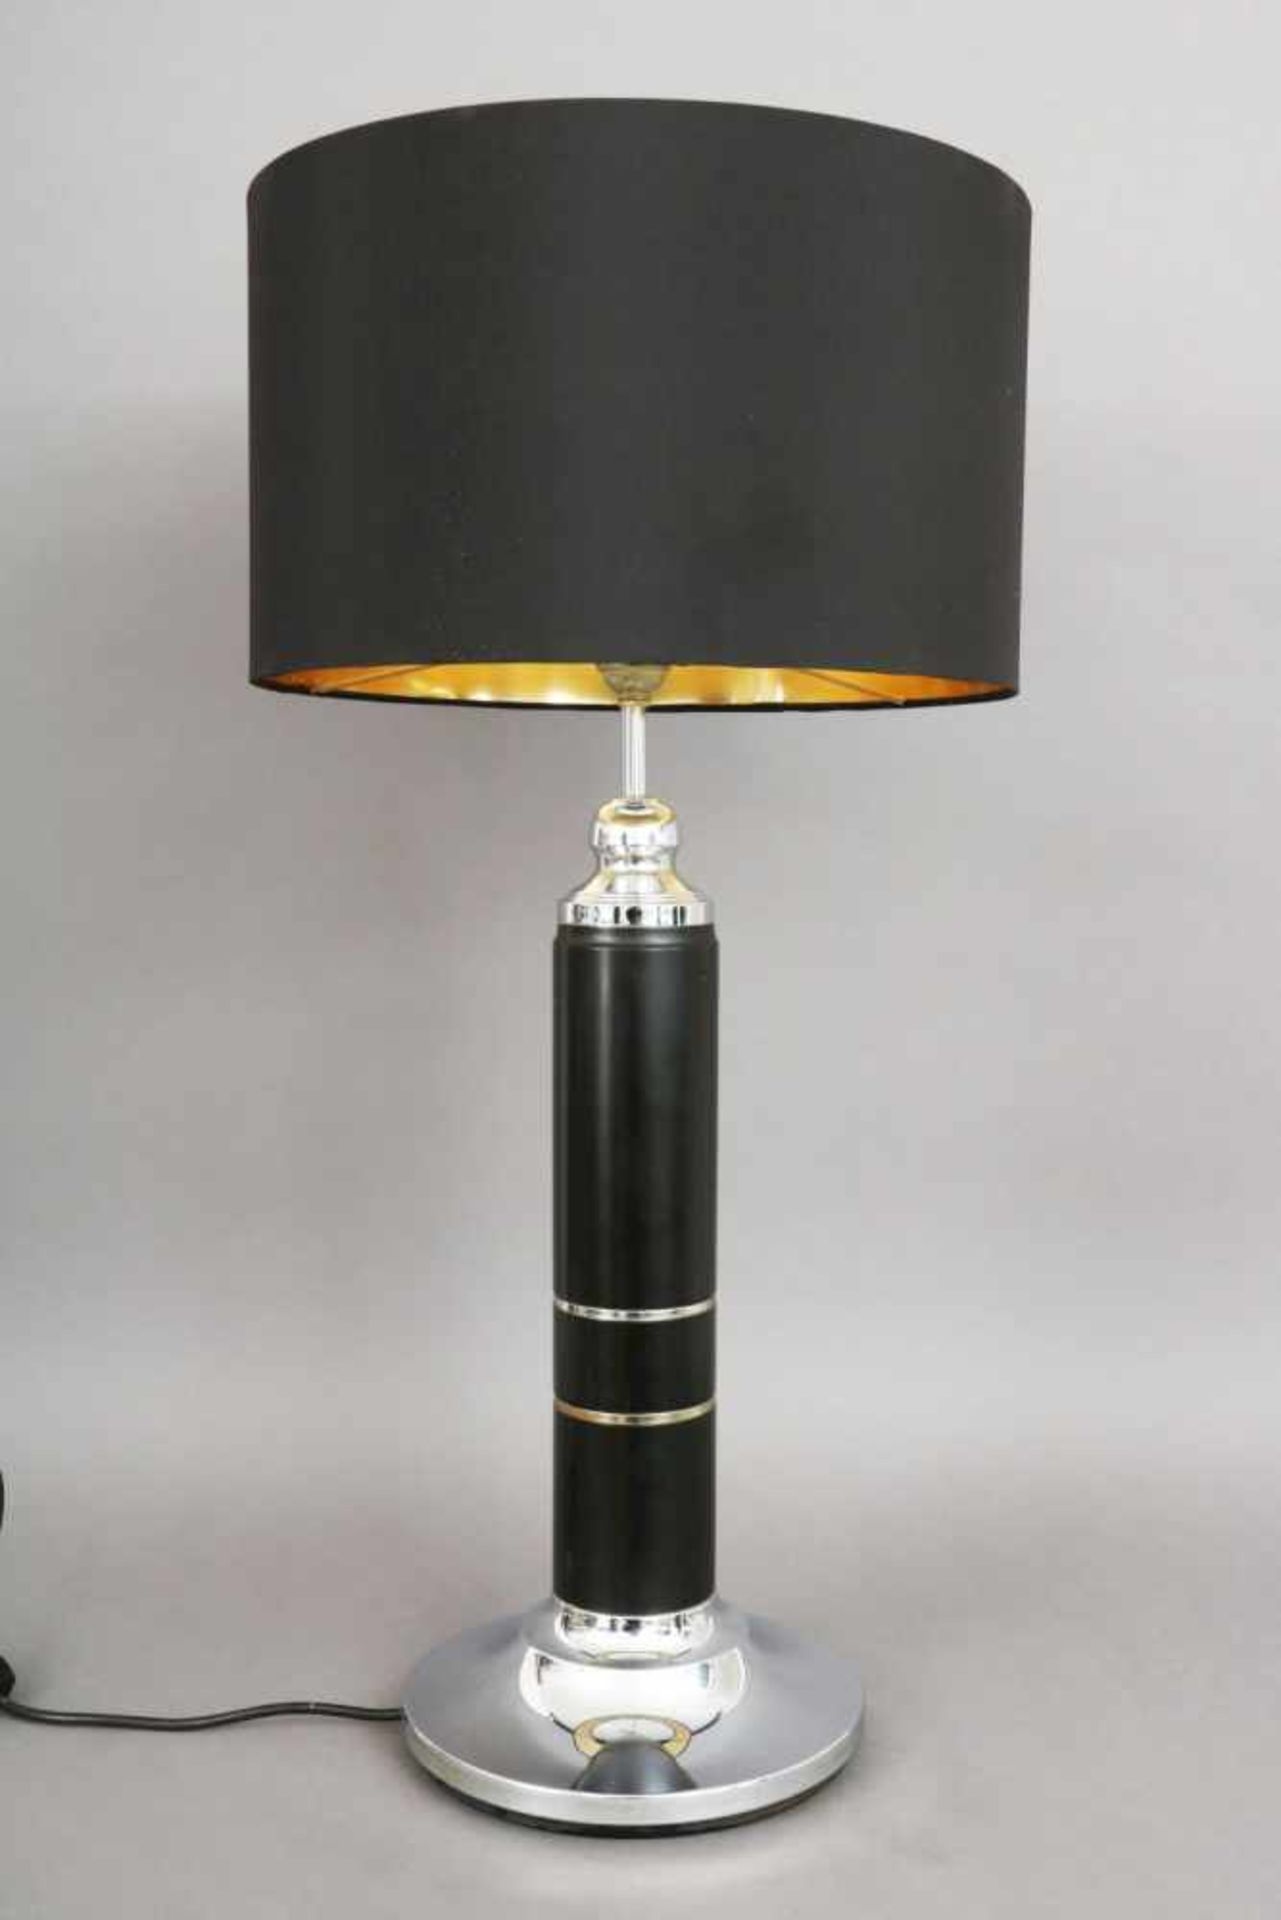 Tischlampe der 1980er Jahreverchromtes Metall und schwarzer Lederbeschlag, Säulenform, schwarzer - Bild 3 aus 3